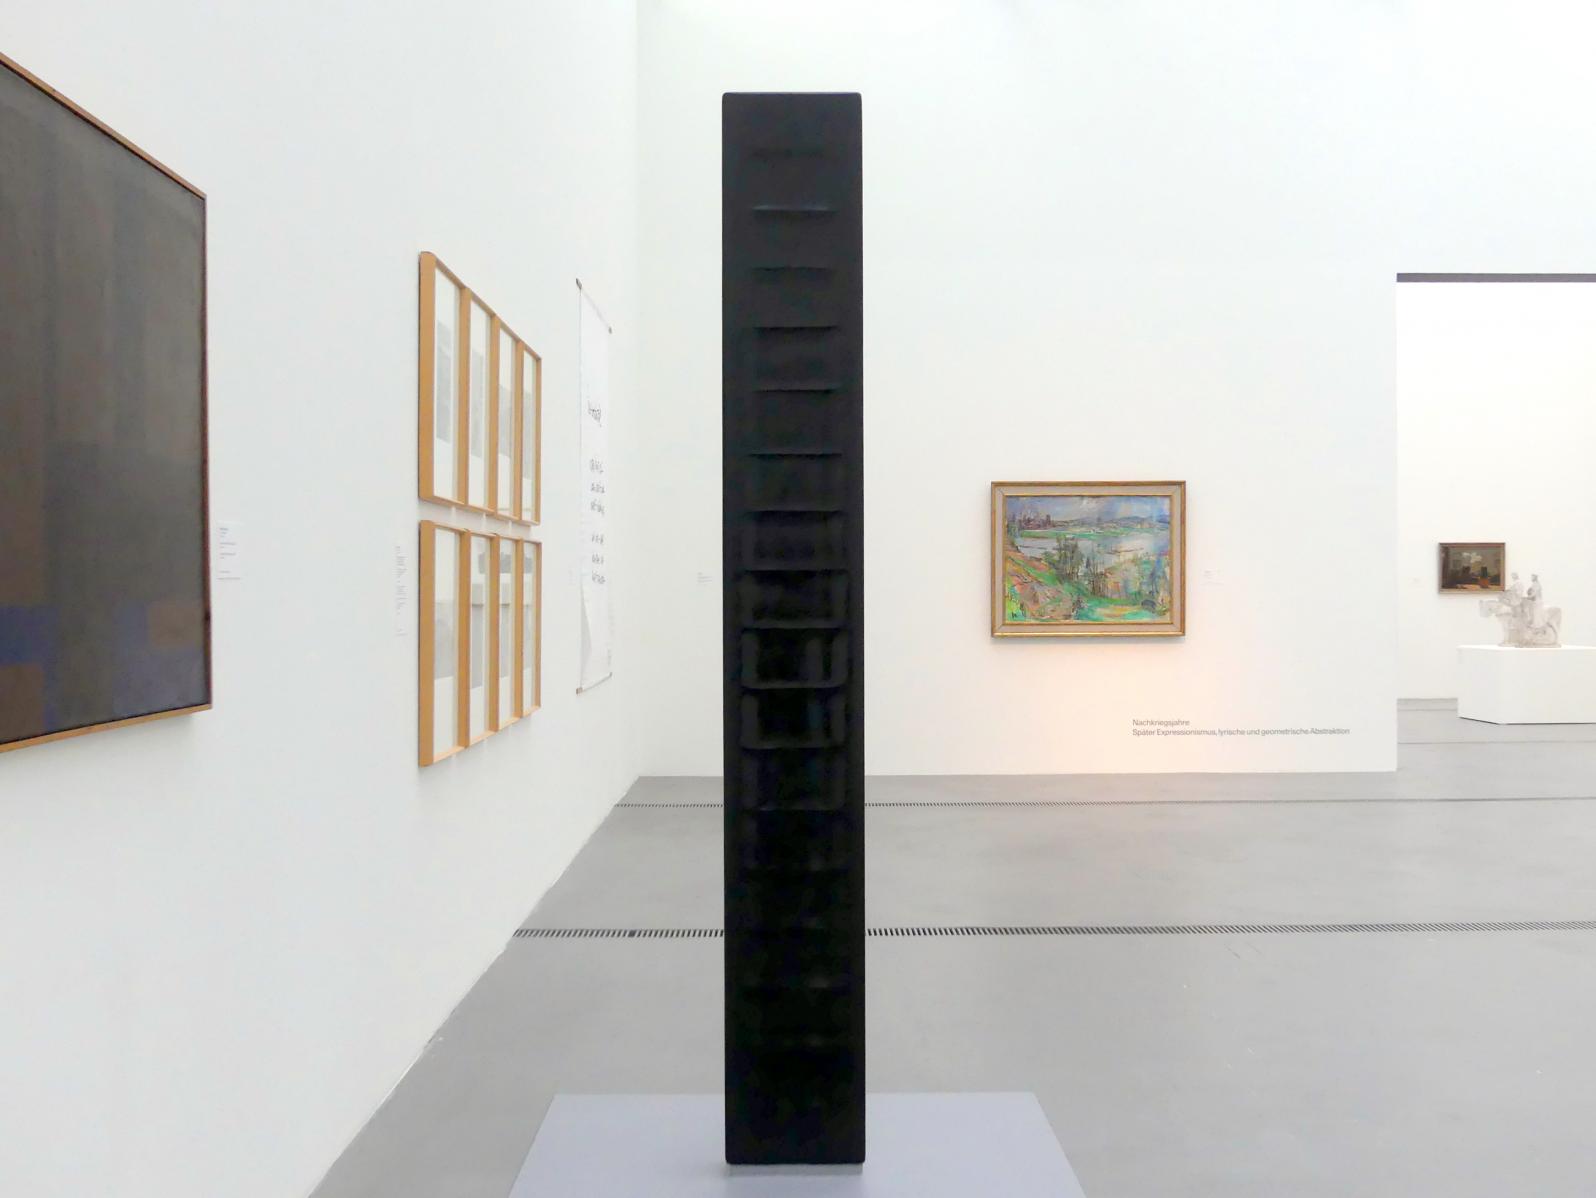 Karl Prantl (1965–1985), Meditation, Linz, Lentos Kunstmuseum Linz, Saal 7 - Nachkriegsjahre, 1965, Bild 1/5